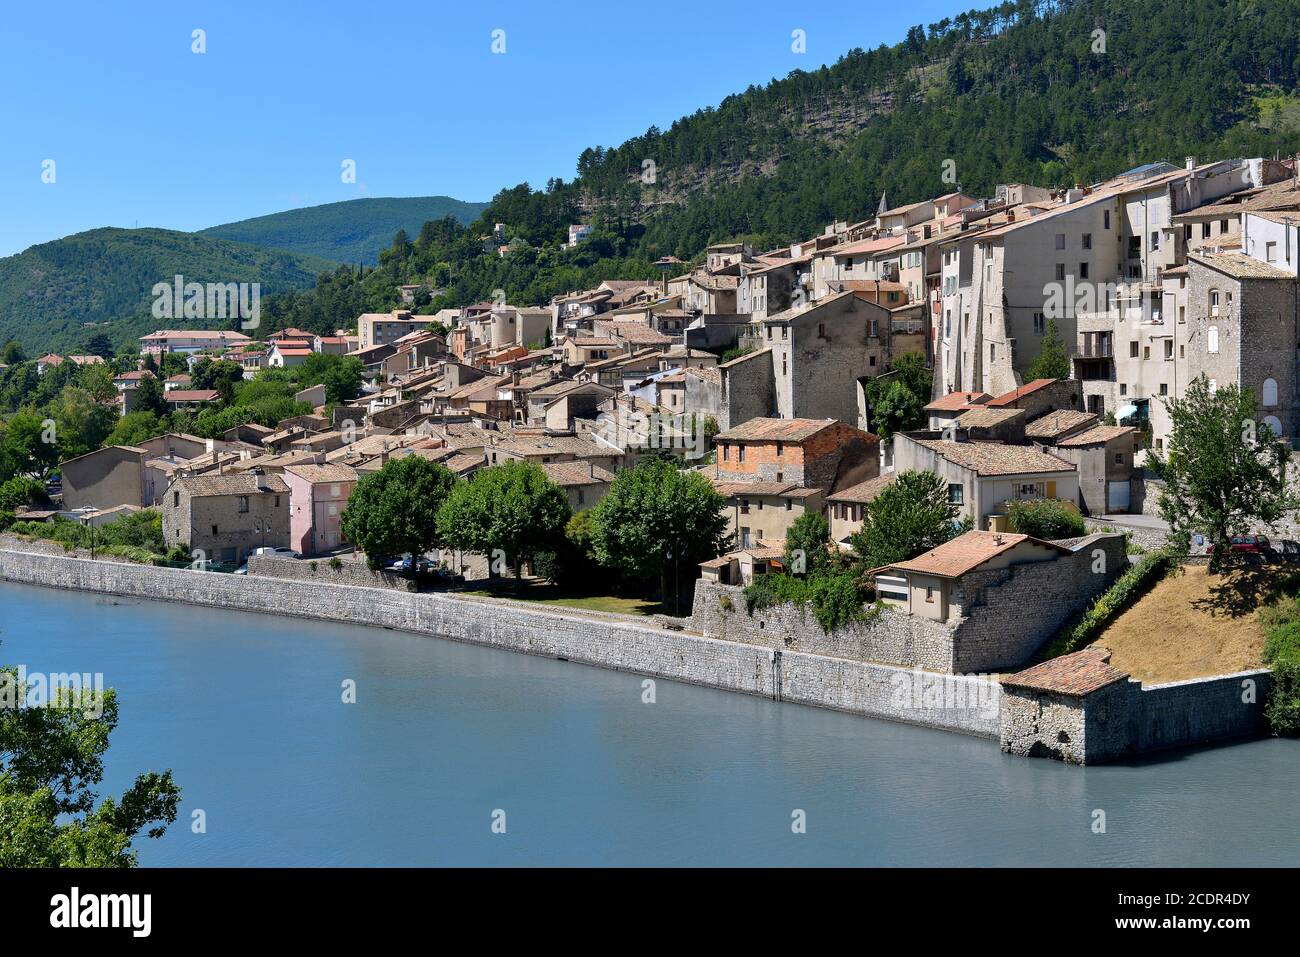 Village de Sisteron sur les rives de la Durance, commune française, située dans le département des Alpes-de-haute-Provence et la région Provence-Alpes-Côte d'Azur Banque D'Images